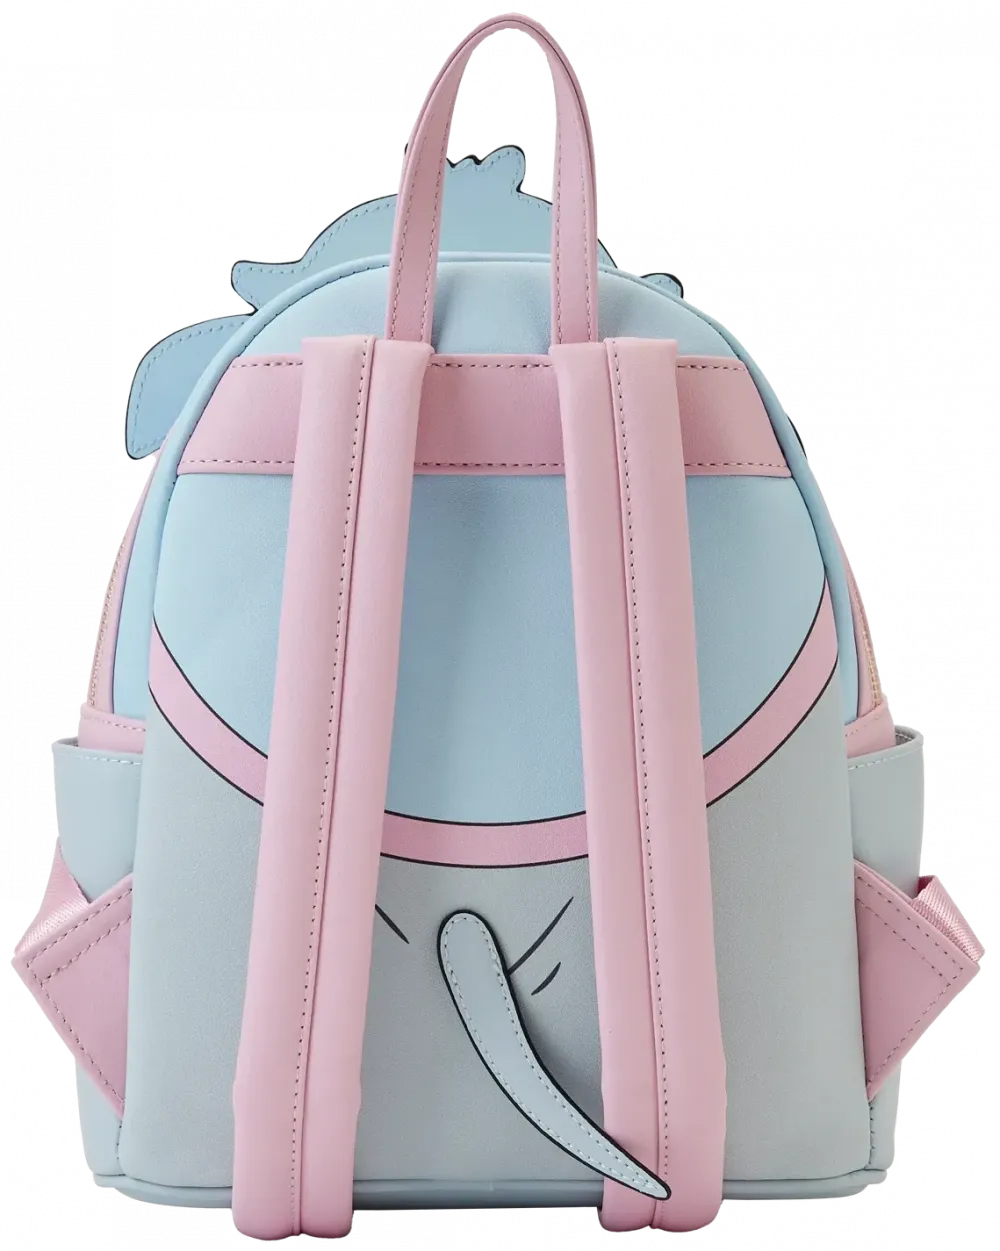 Dumbo Mrs Jumbo Cradle Trunk Cosplay Mini Backpack Loungefly